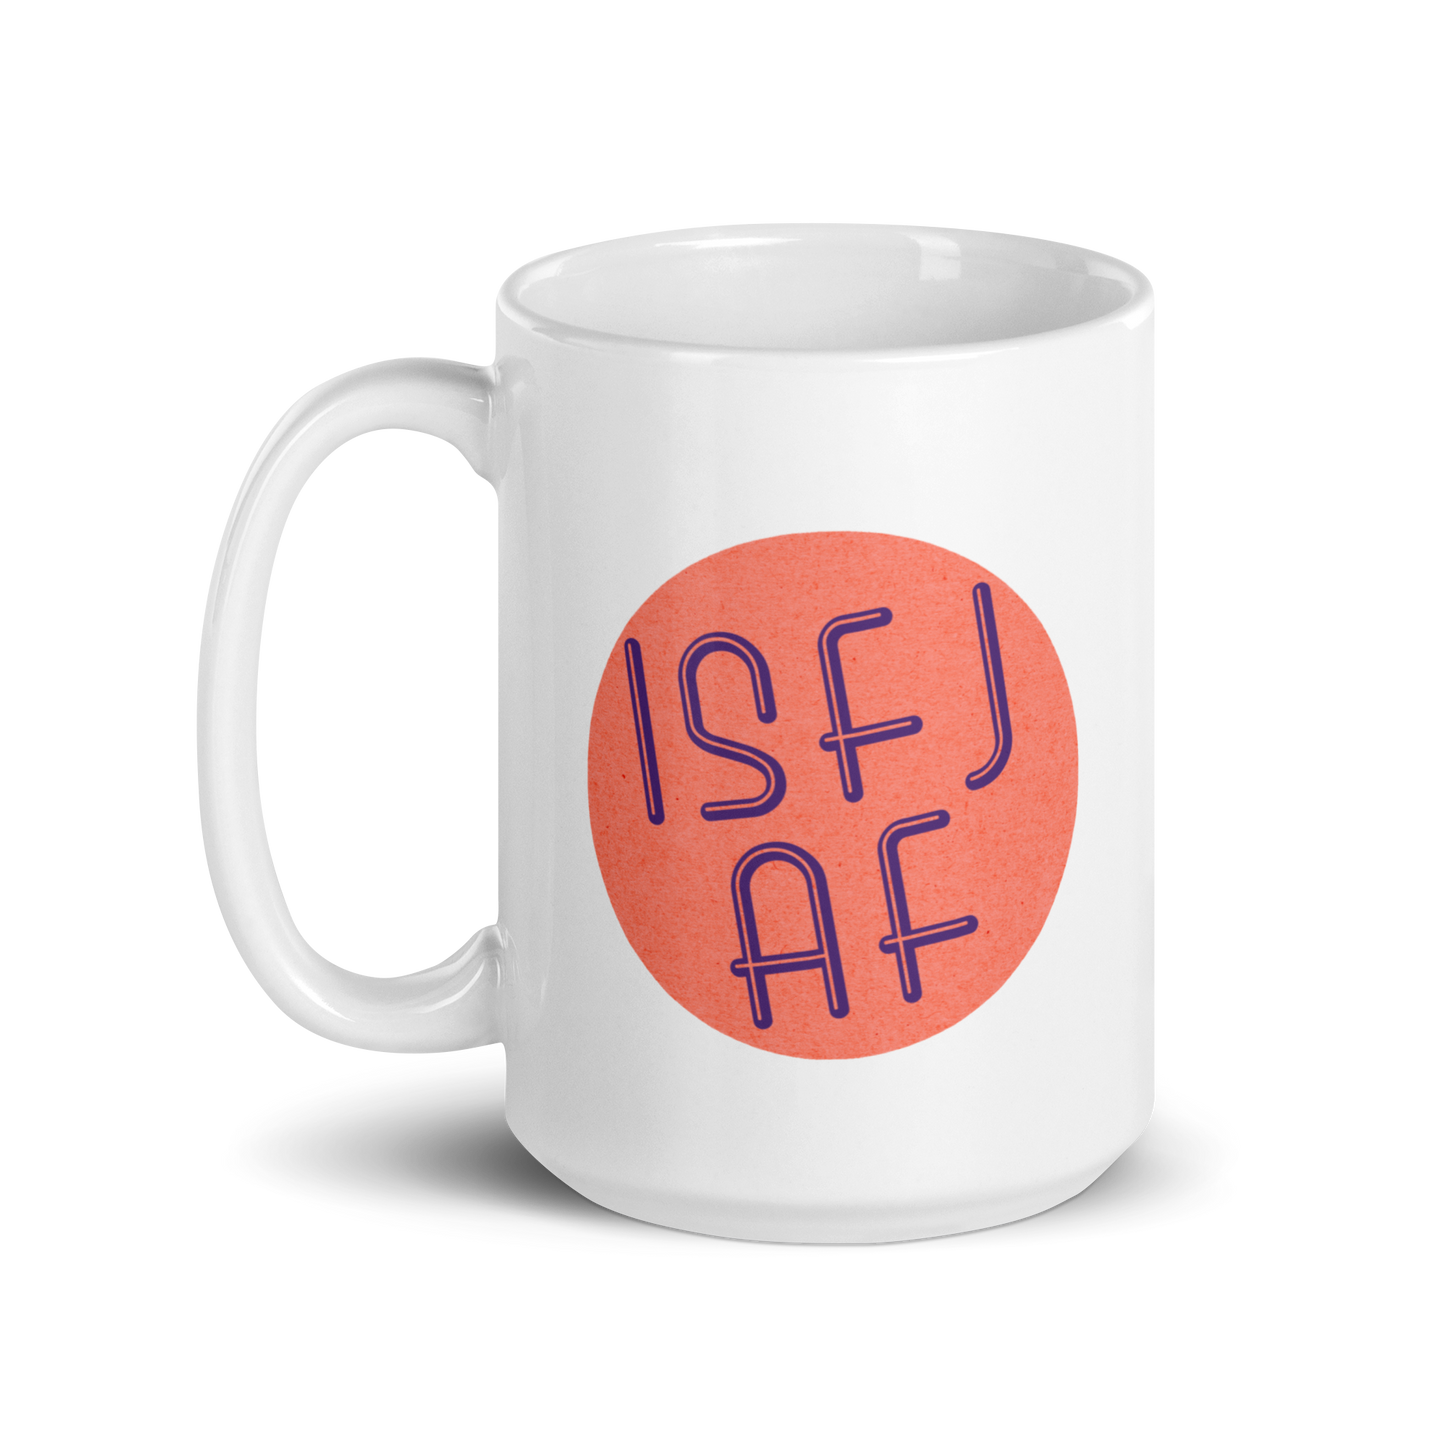 ISFJ AF White Mug